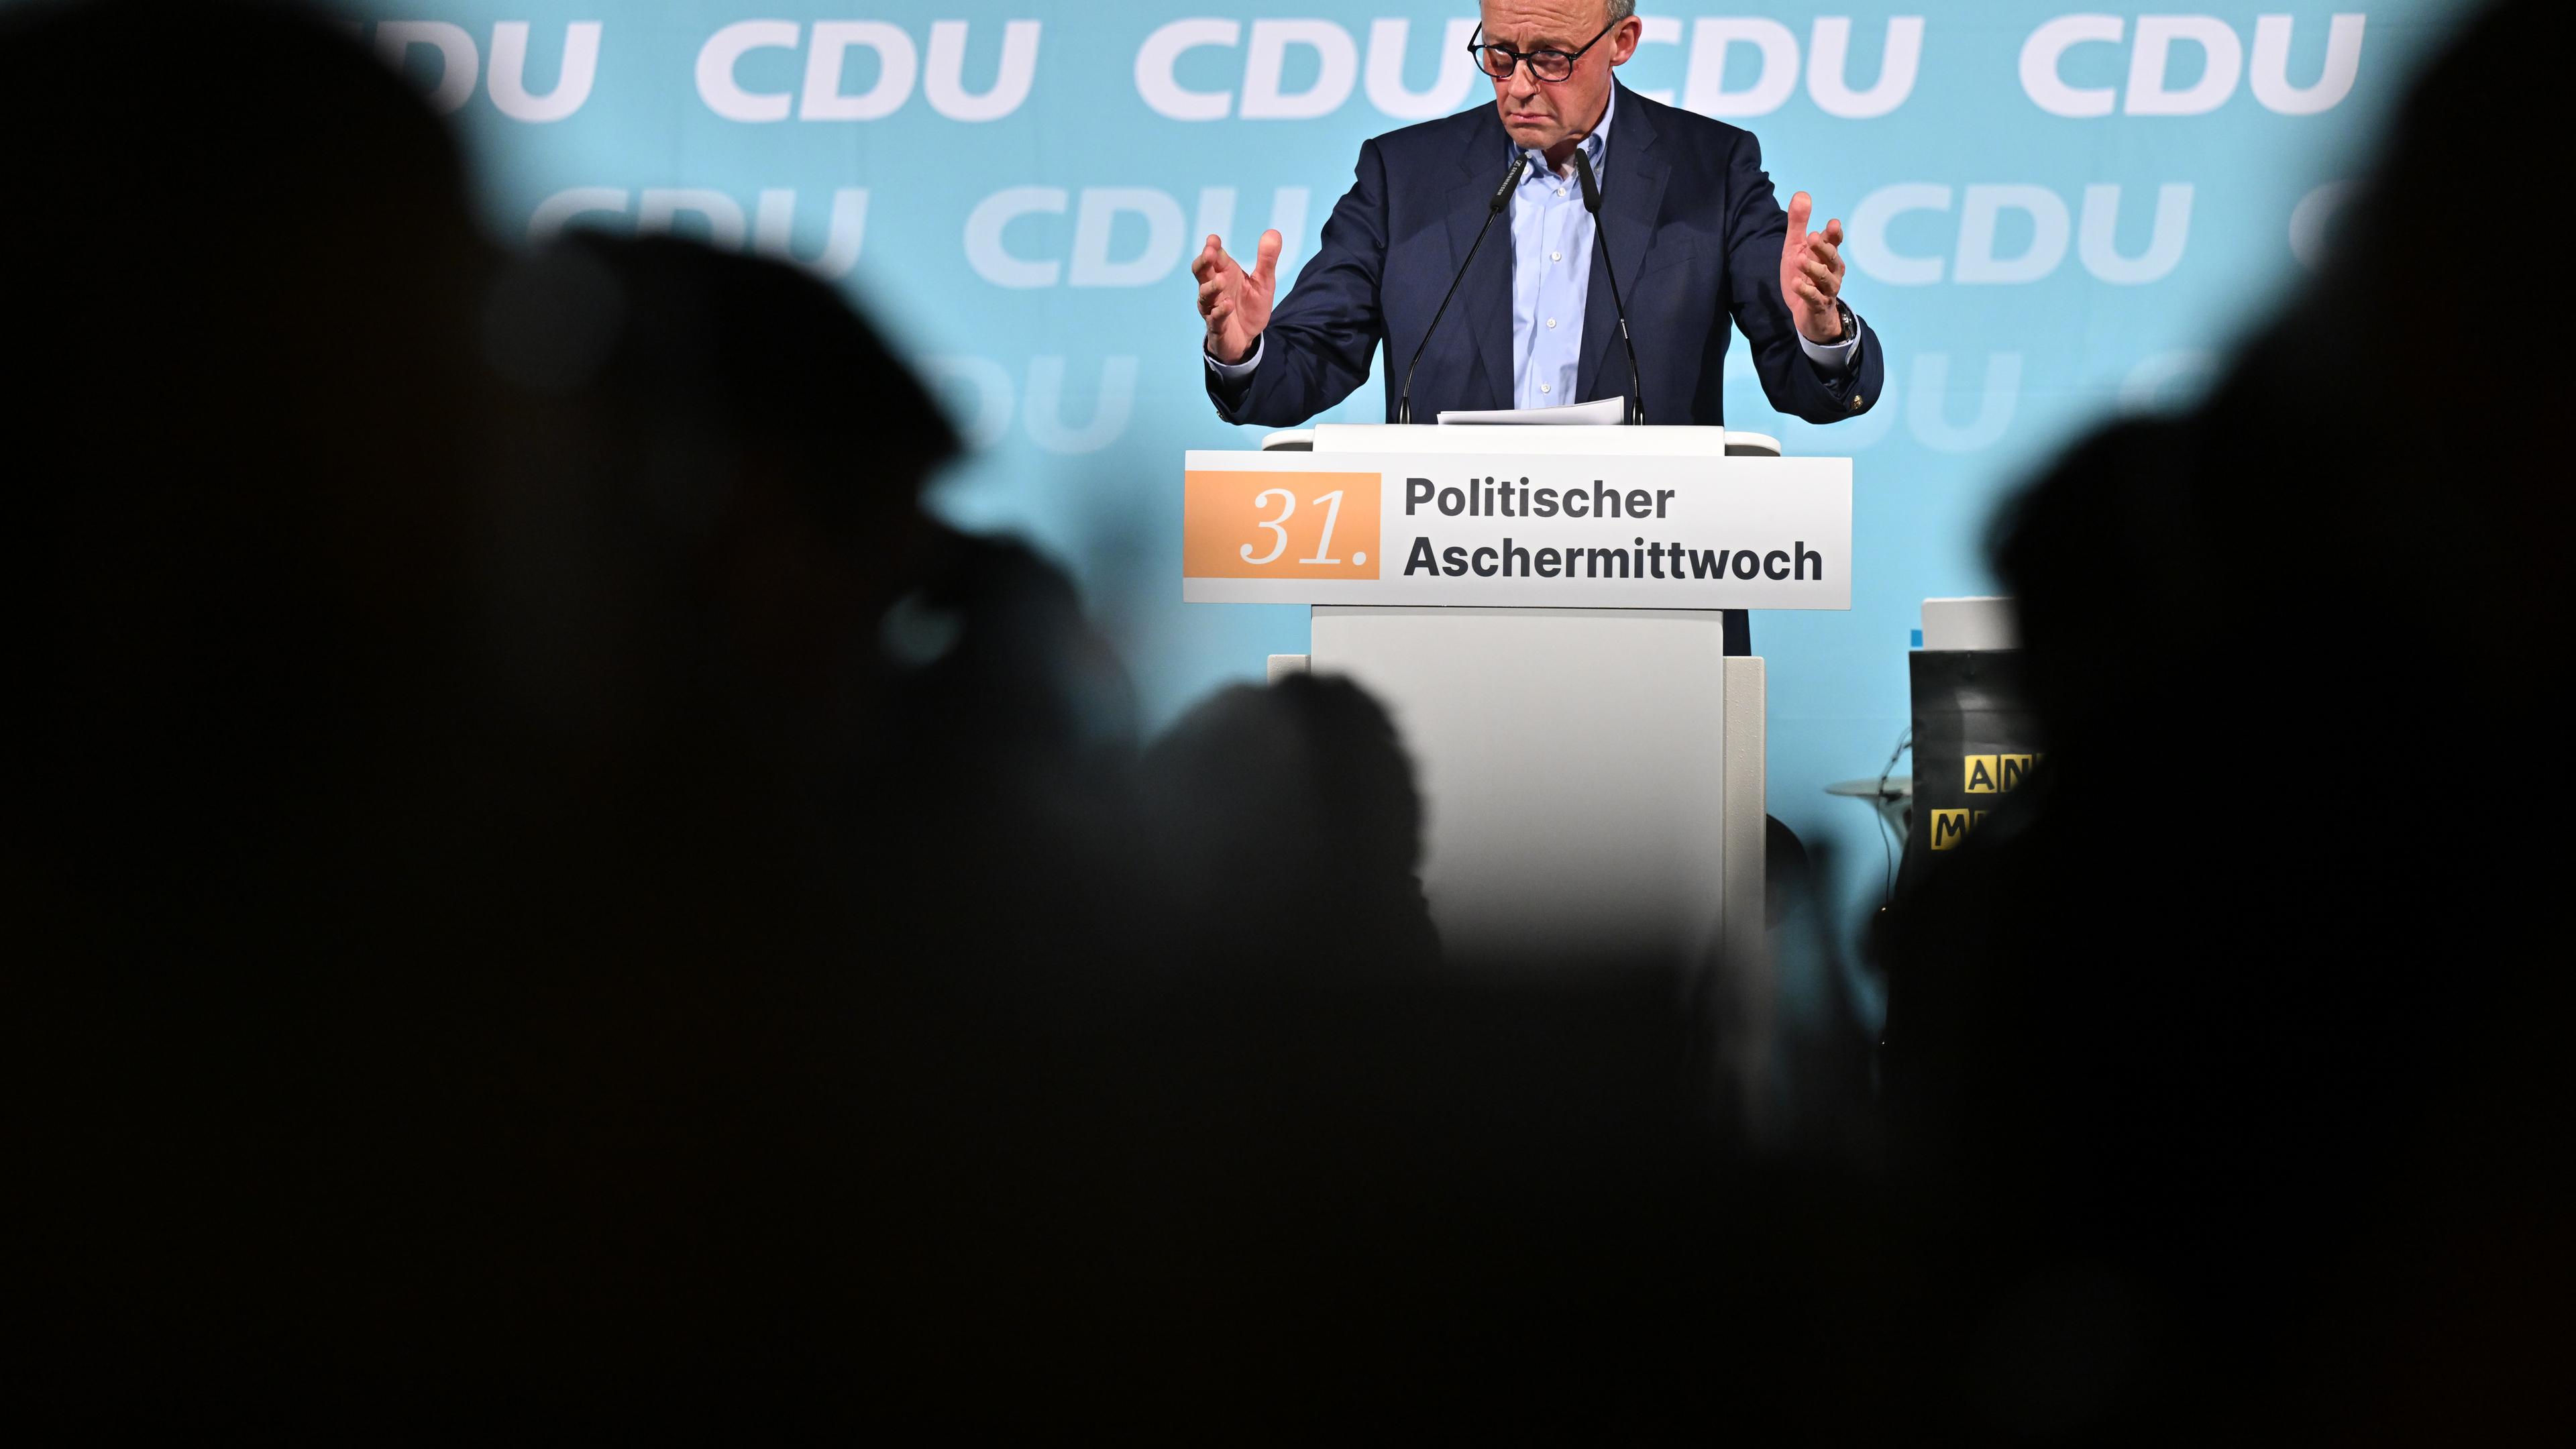 Friedrich Merz, CDU-Parteivorsitzender, spricht beim Politischen Aschermittwoch des CDU-Landesverbands Thüringen